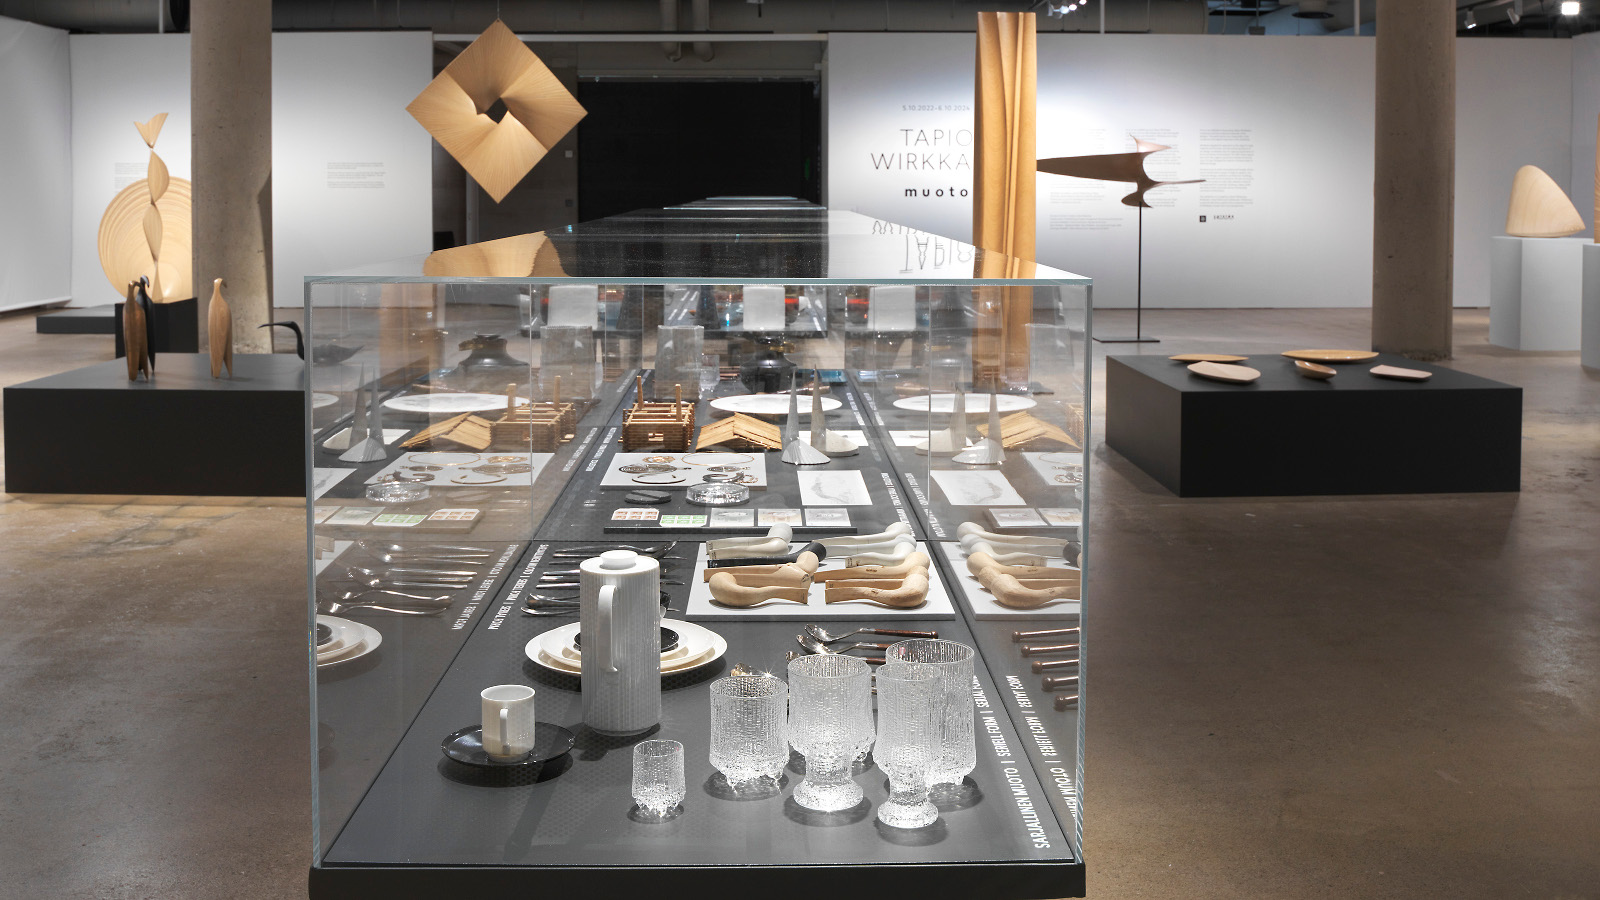 Kuvassa on Wirkkalan näyttelyhuone, jossa on keskellä vitriini ja näyttelyesineitä.  Seinillä on myös ripustettuna mm. puusta muotoiltuja esineitä.